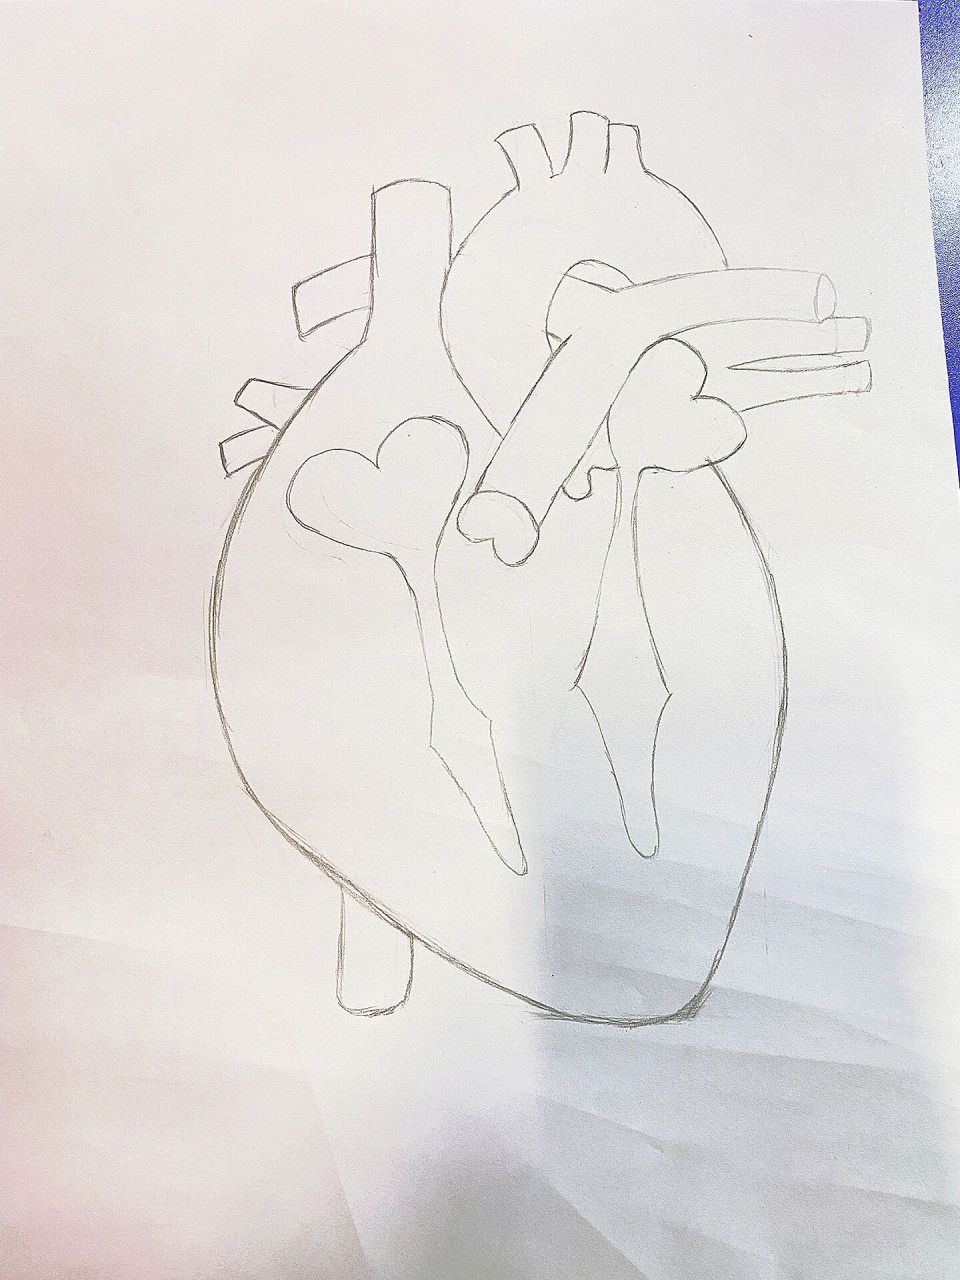 心脏解剖图手绘 论心脏解剖手绘图步骤